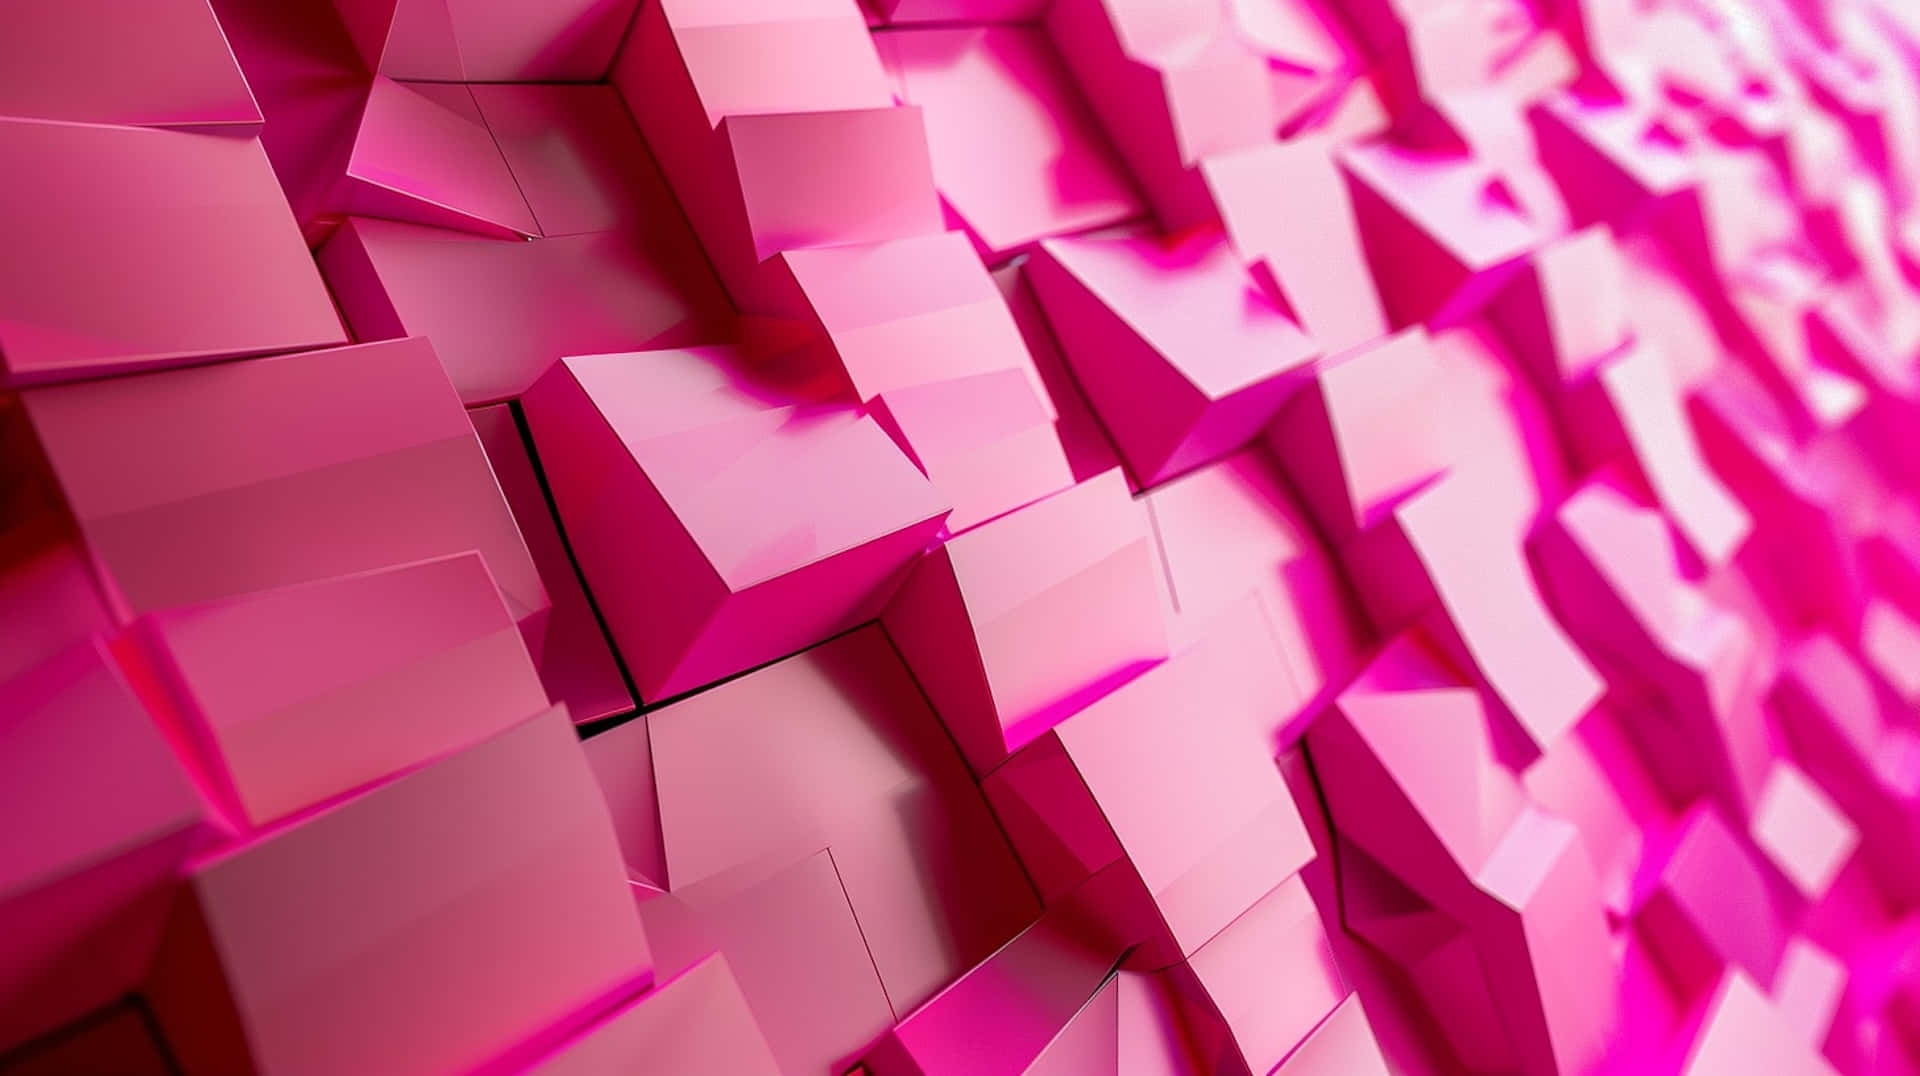 Pink3 D Geometric Wall Wallpaper